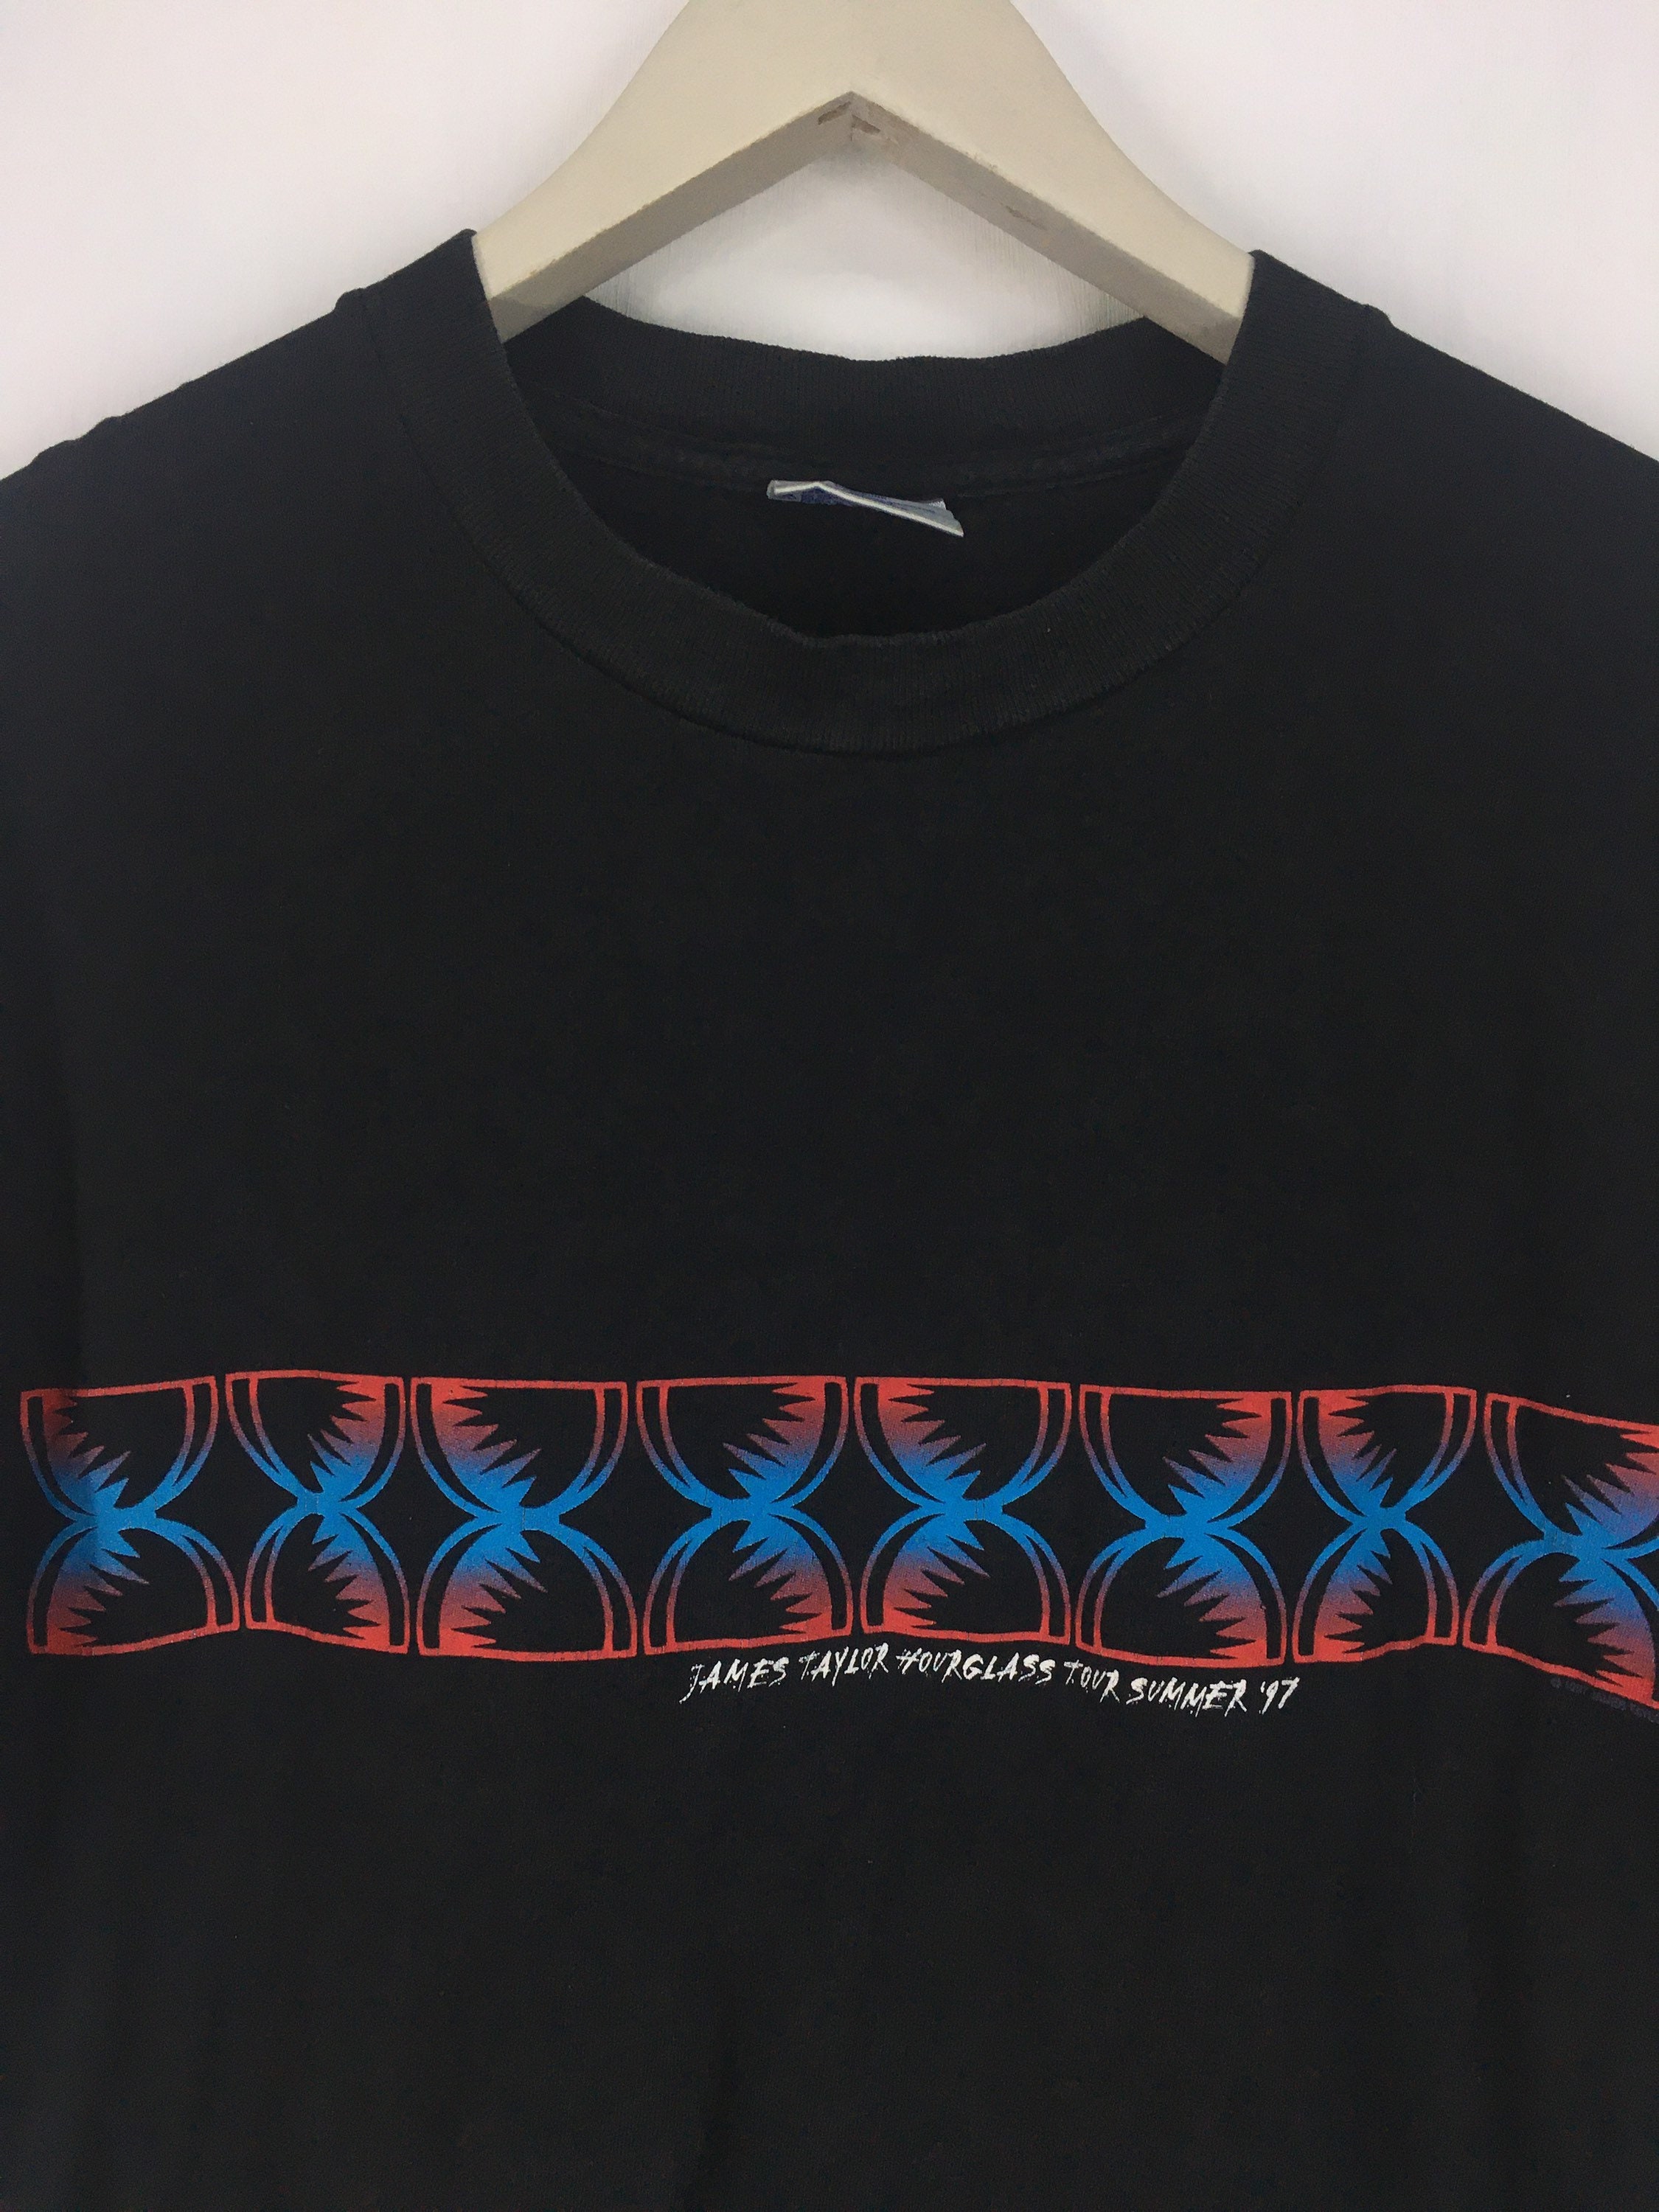 Vintage 90s James Taylor Hourglass Tour Summer 97 T Shirt L - Etsy